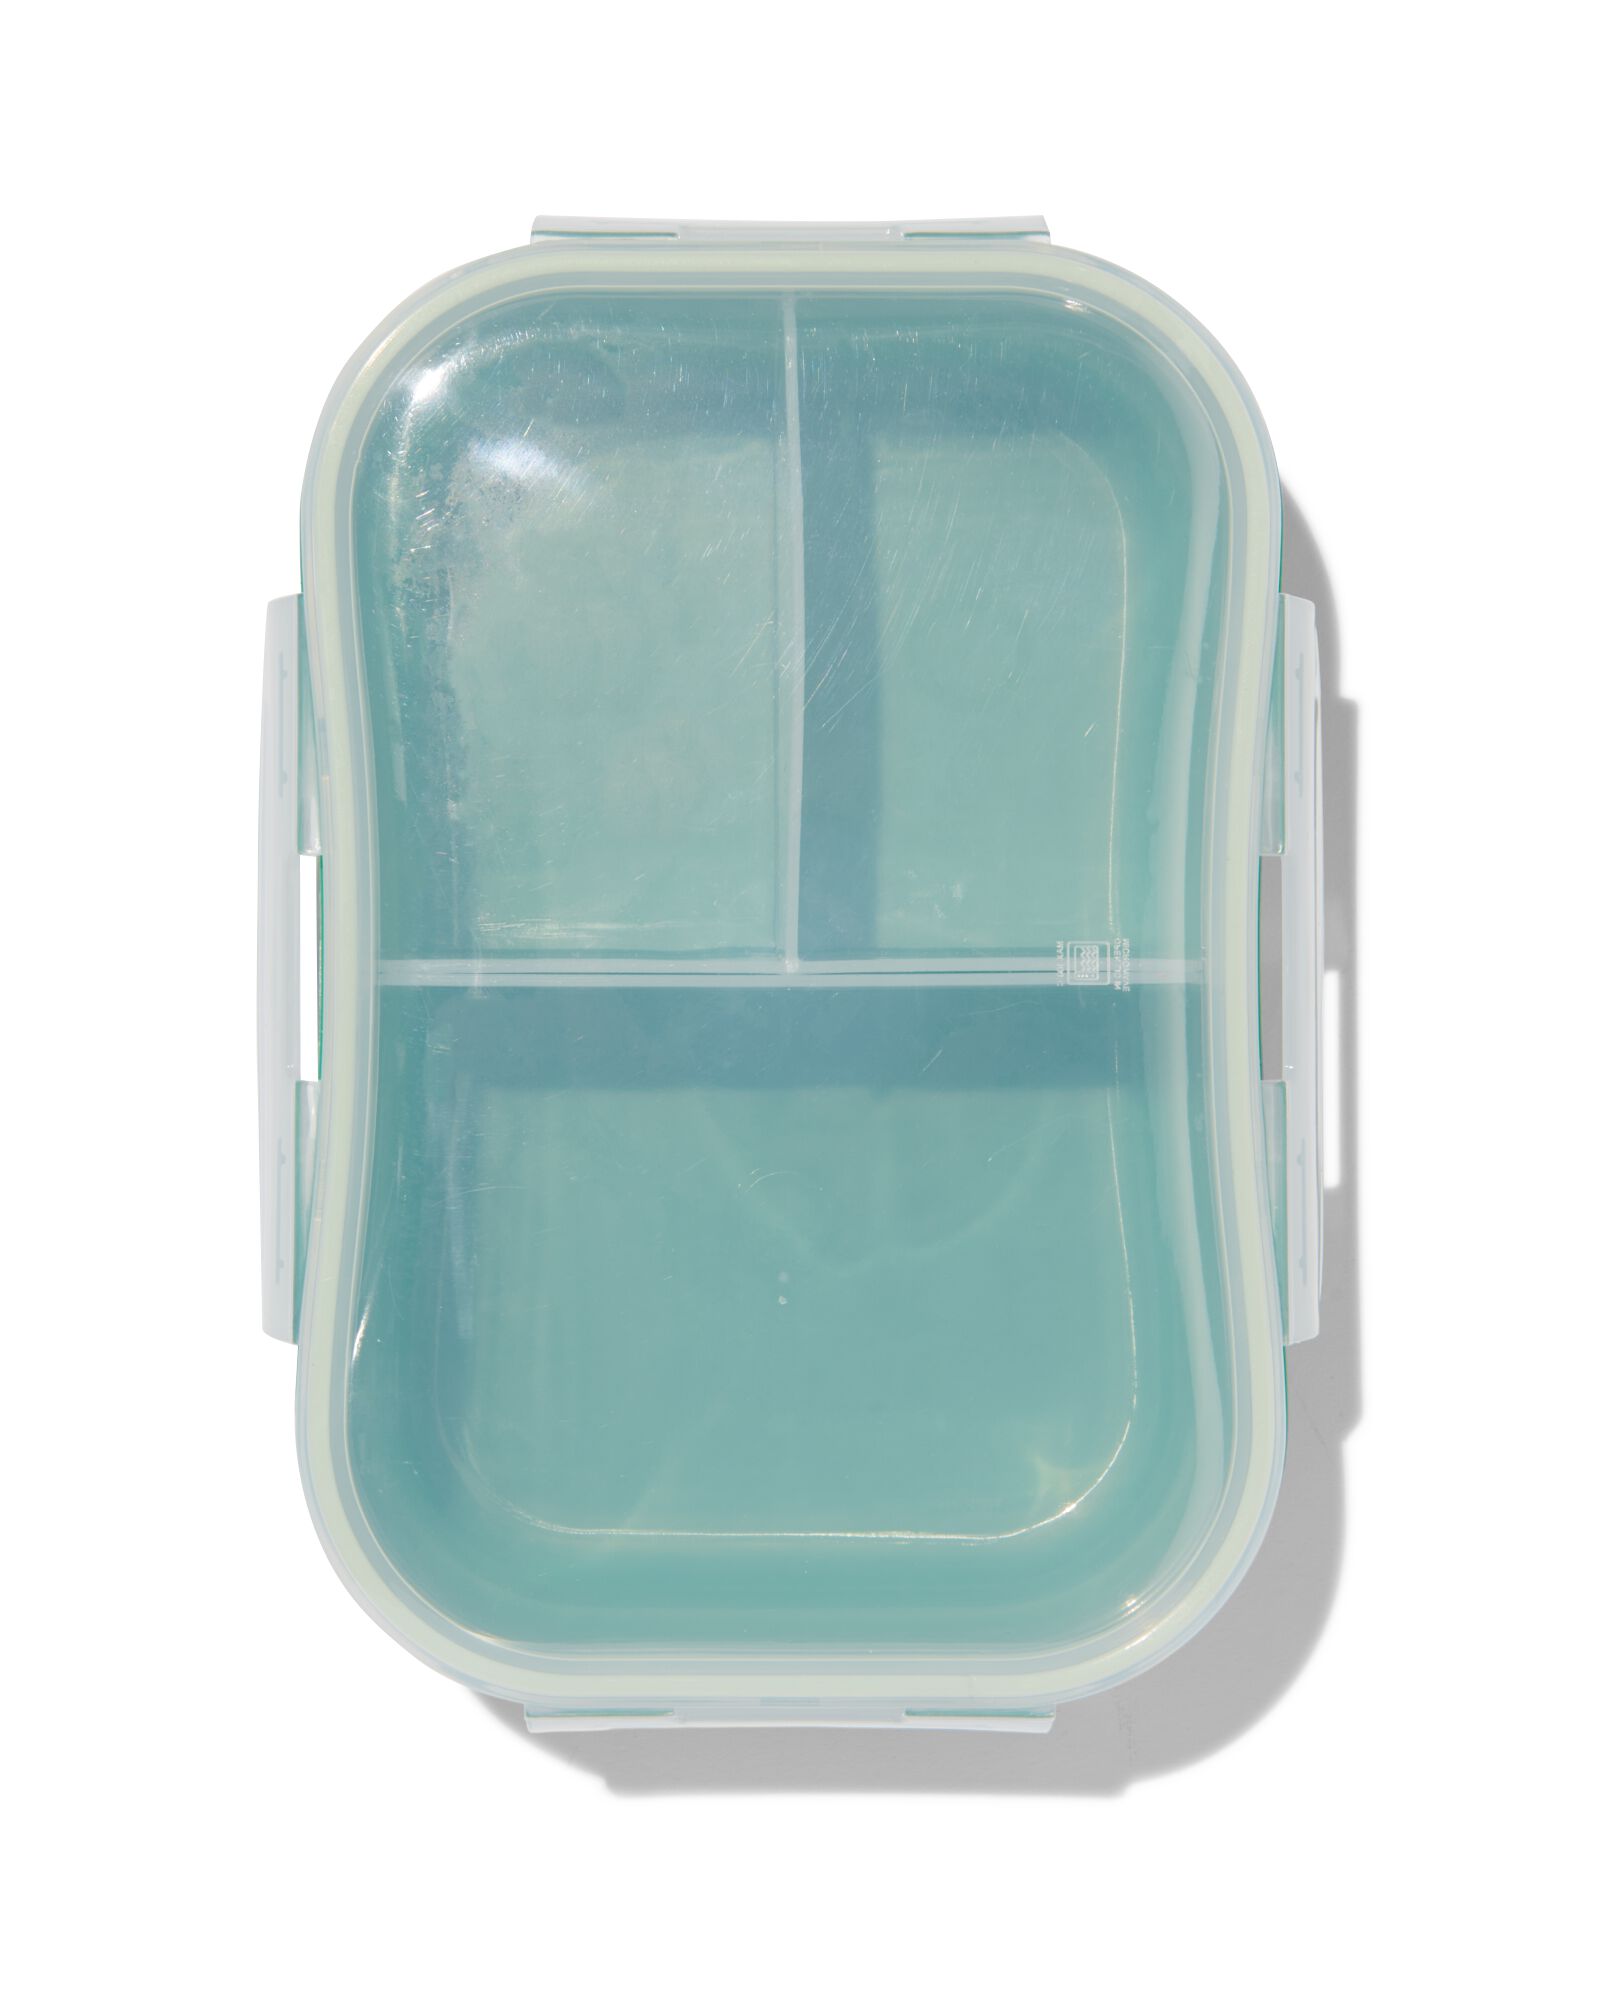 Lunch Box en Fibre de blé Verte Triple-compartiment Compatible